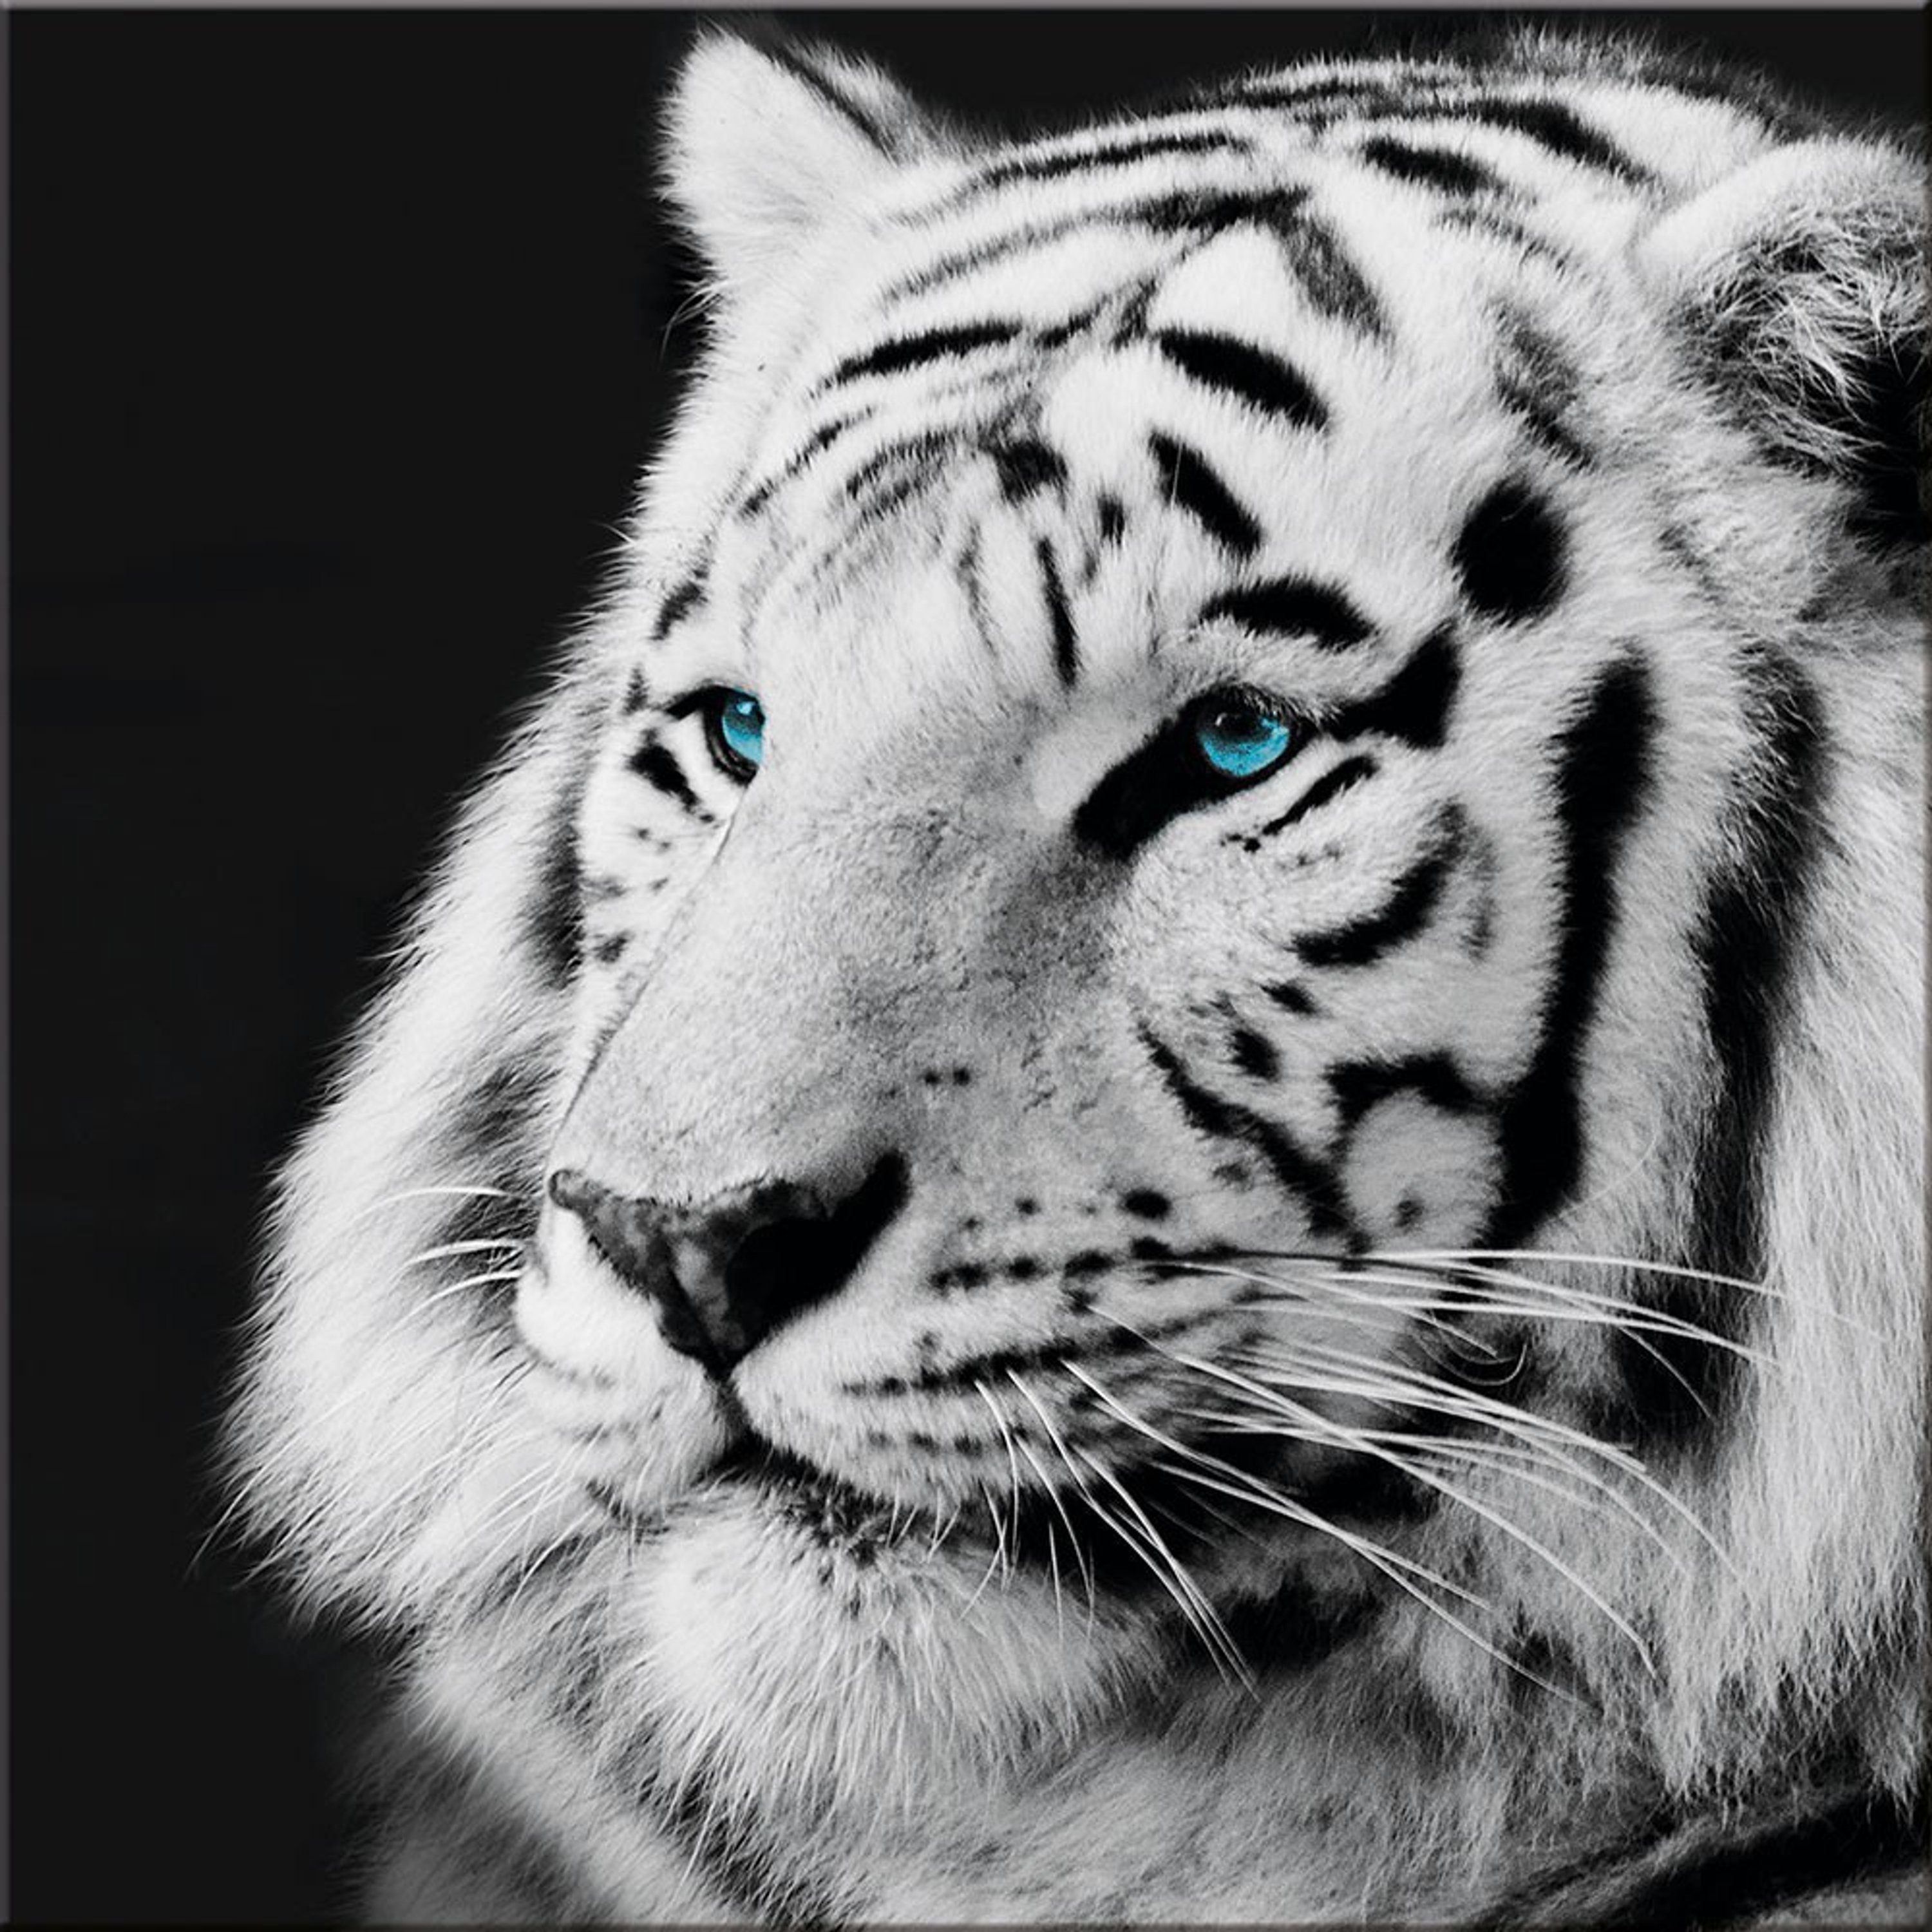 Bild schwarz-weiß Glasbild Foto artissimo schwarz-weiß Tiger, Glasbild Foto: 30x30cm Löwe